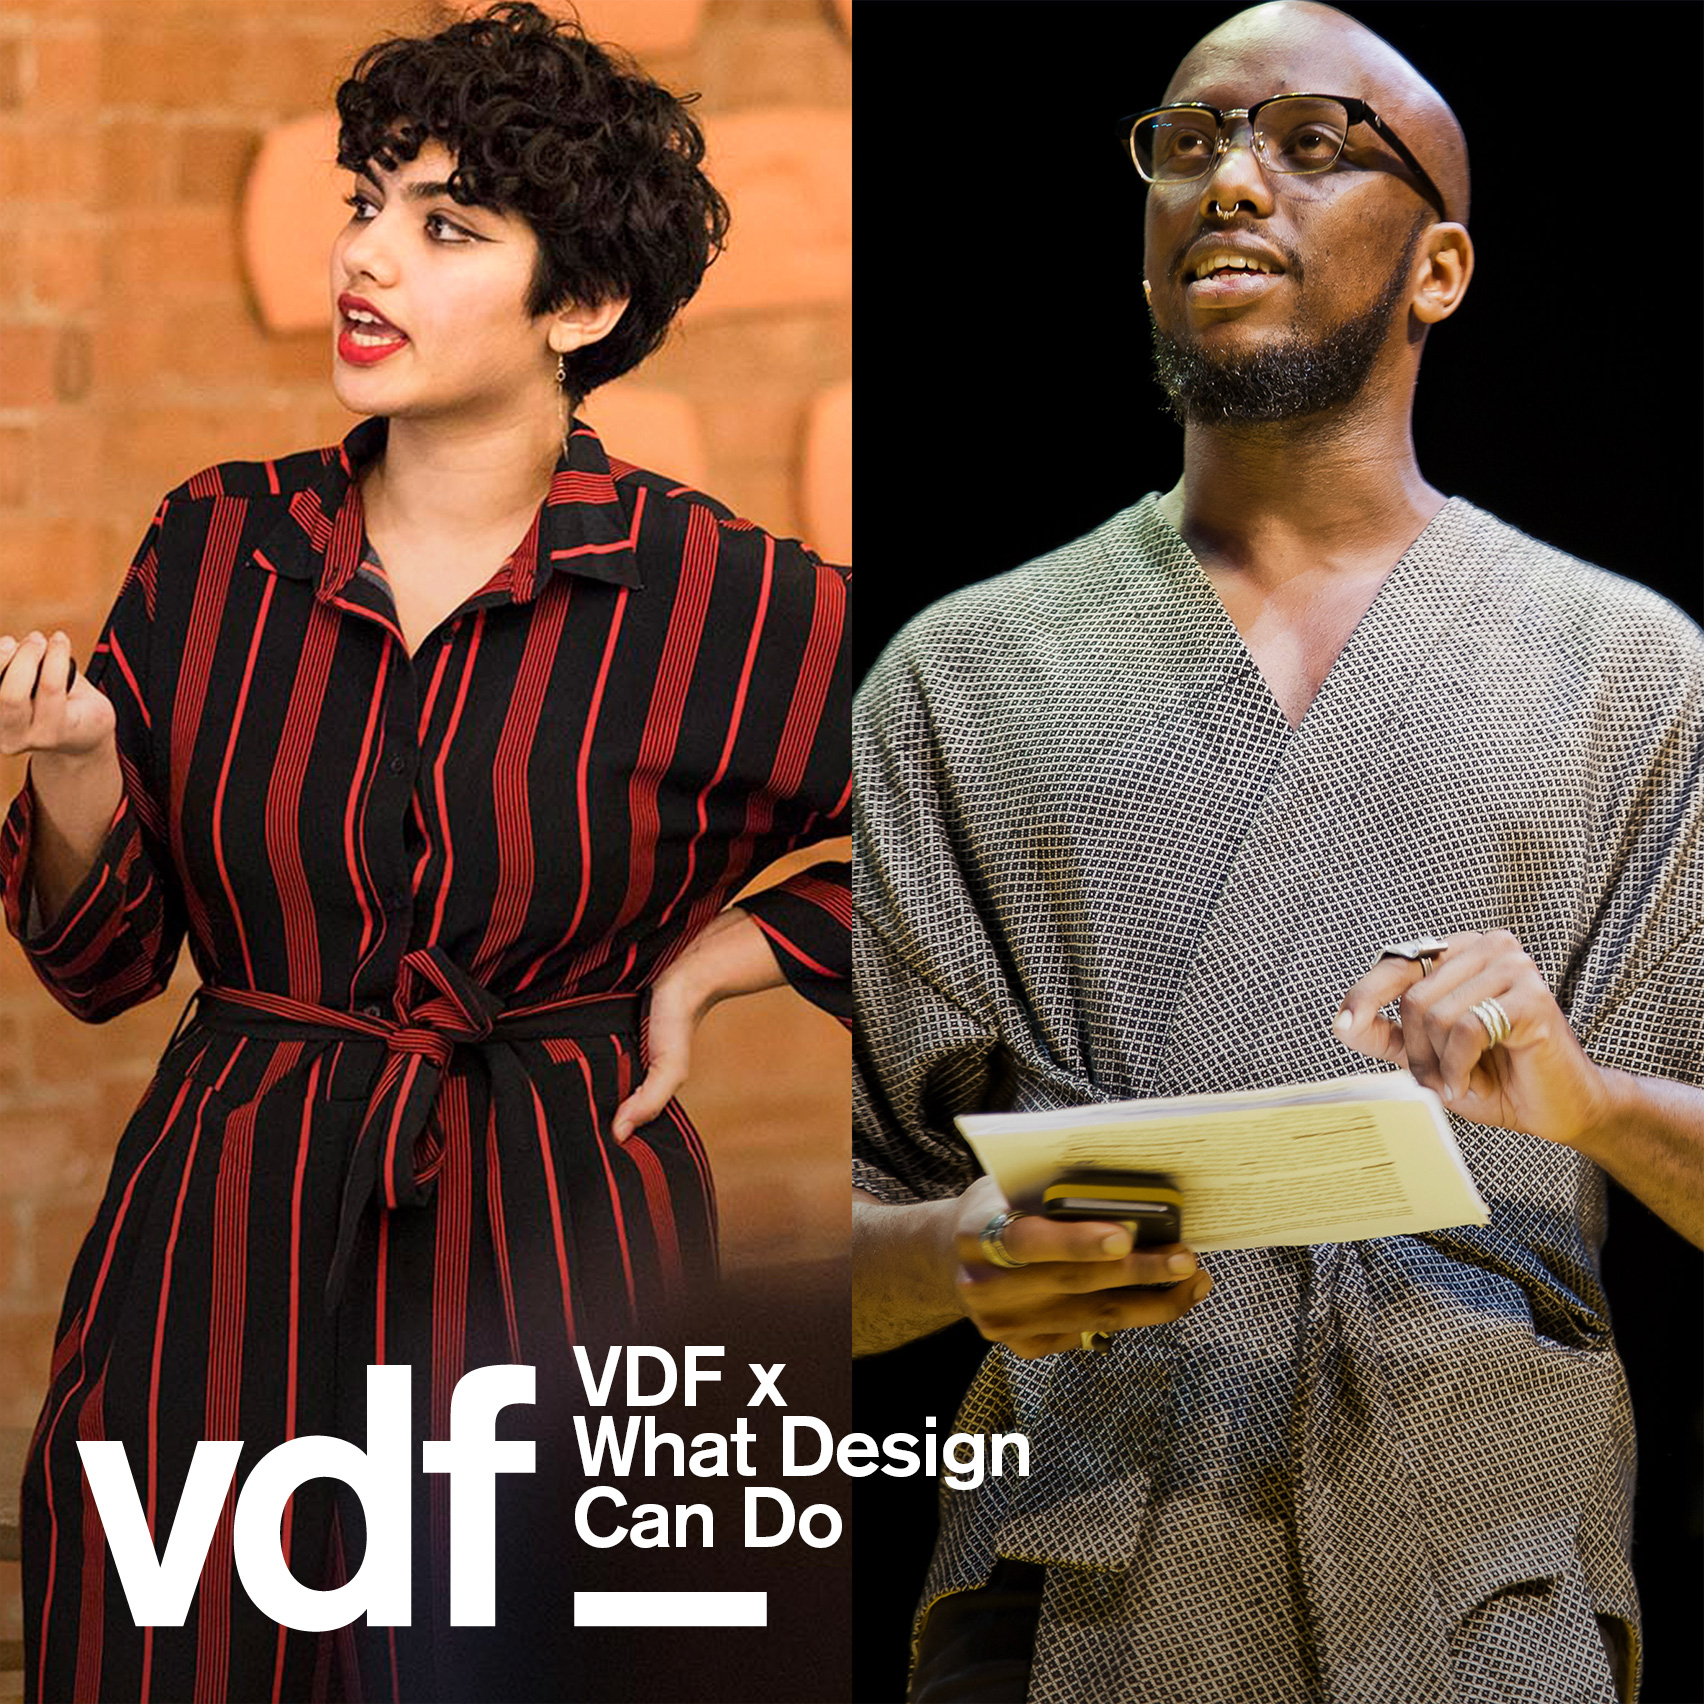 This week's VDF highlights include Vitra, Neri&Hu, Lee Broom, Gaetano Pesce and Es Devlin